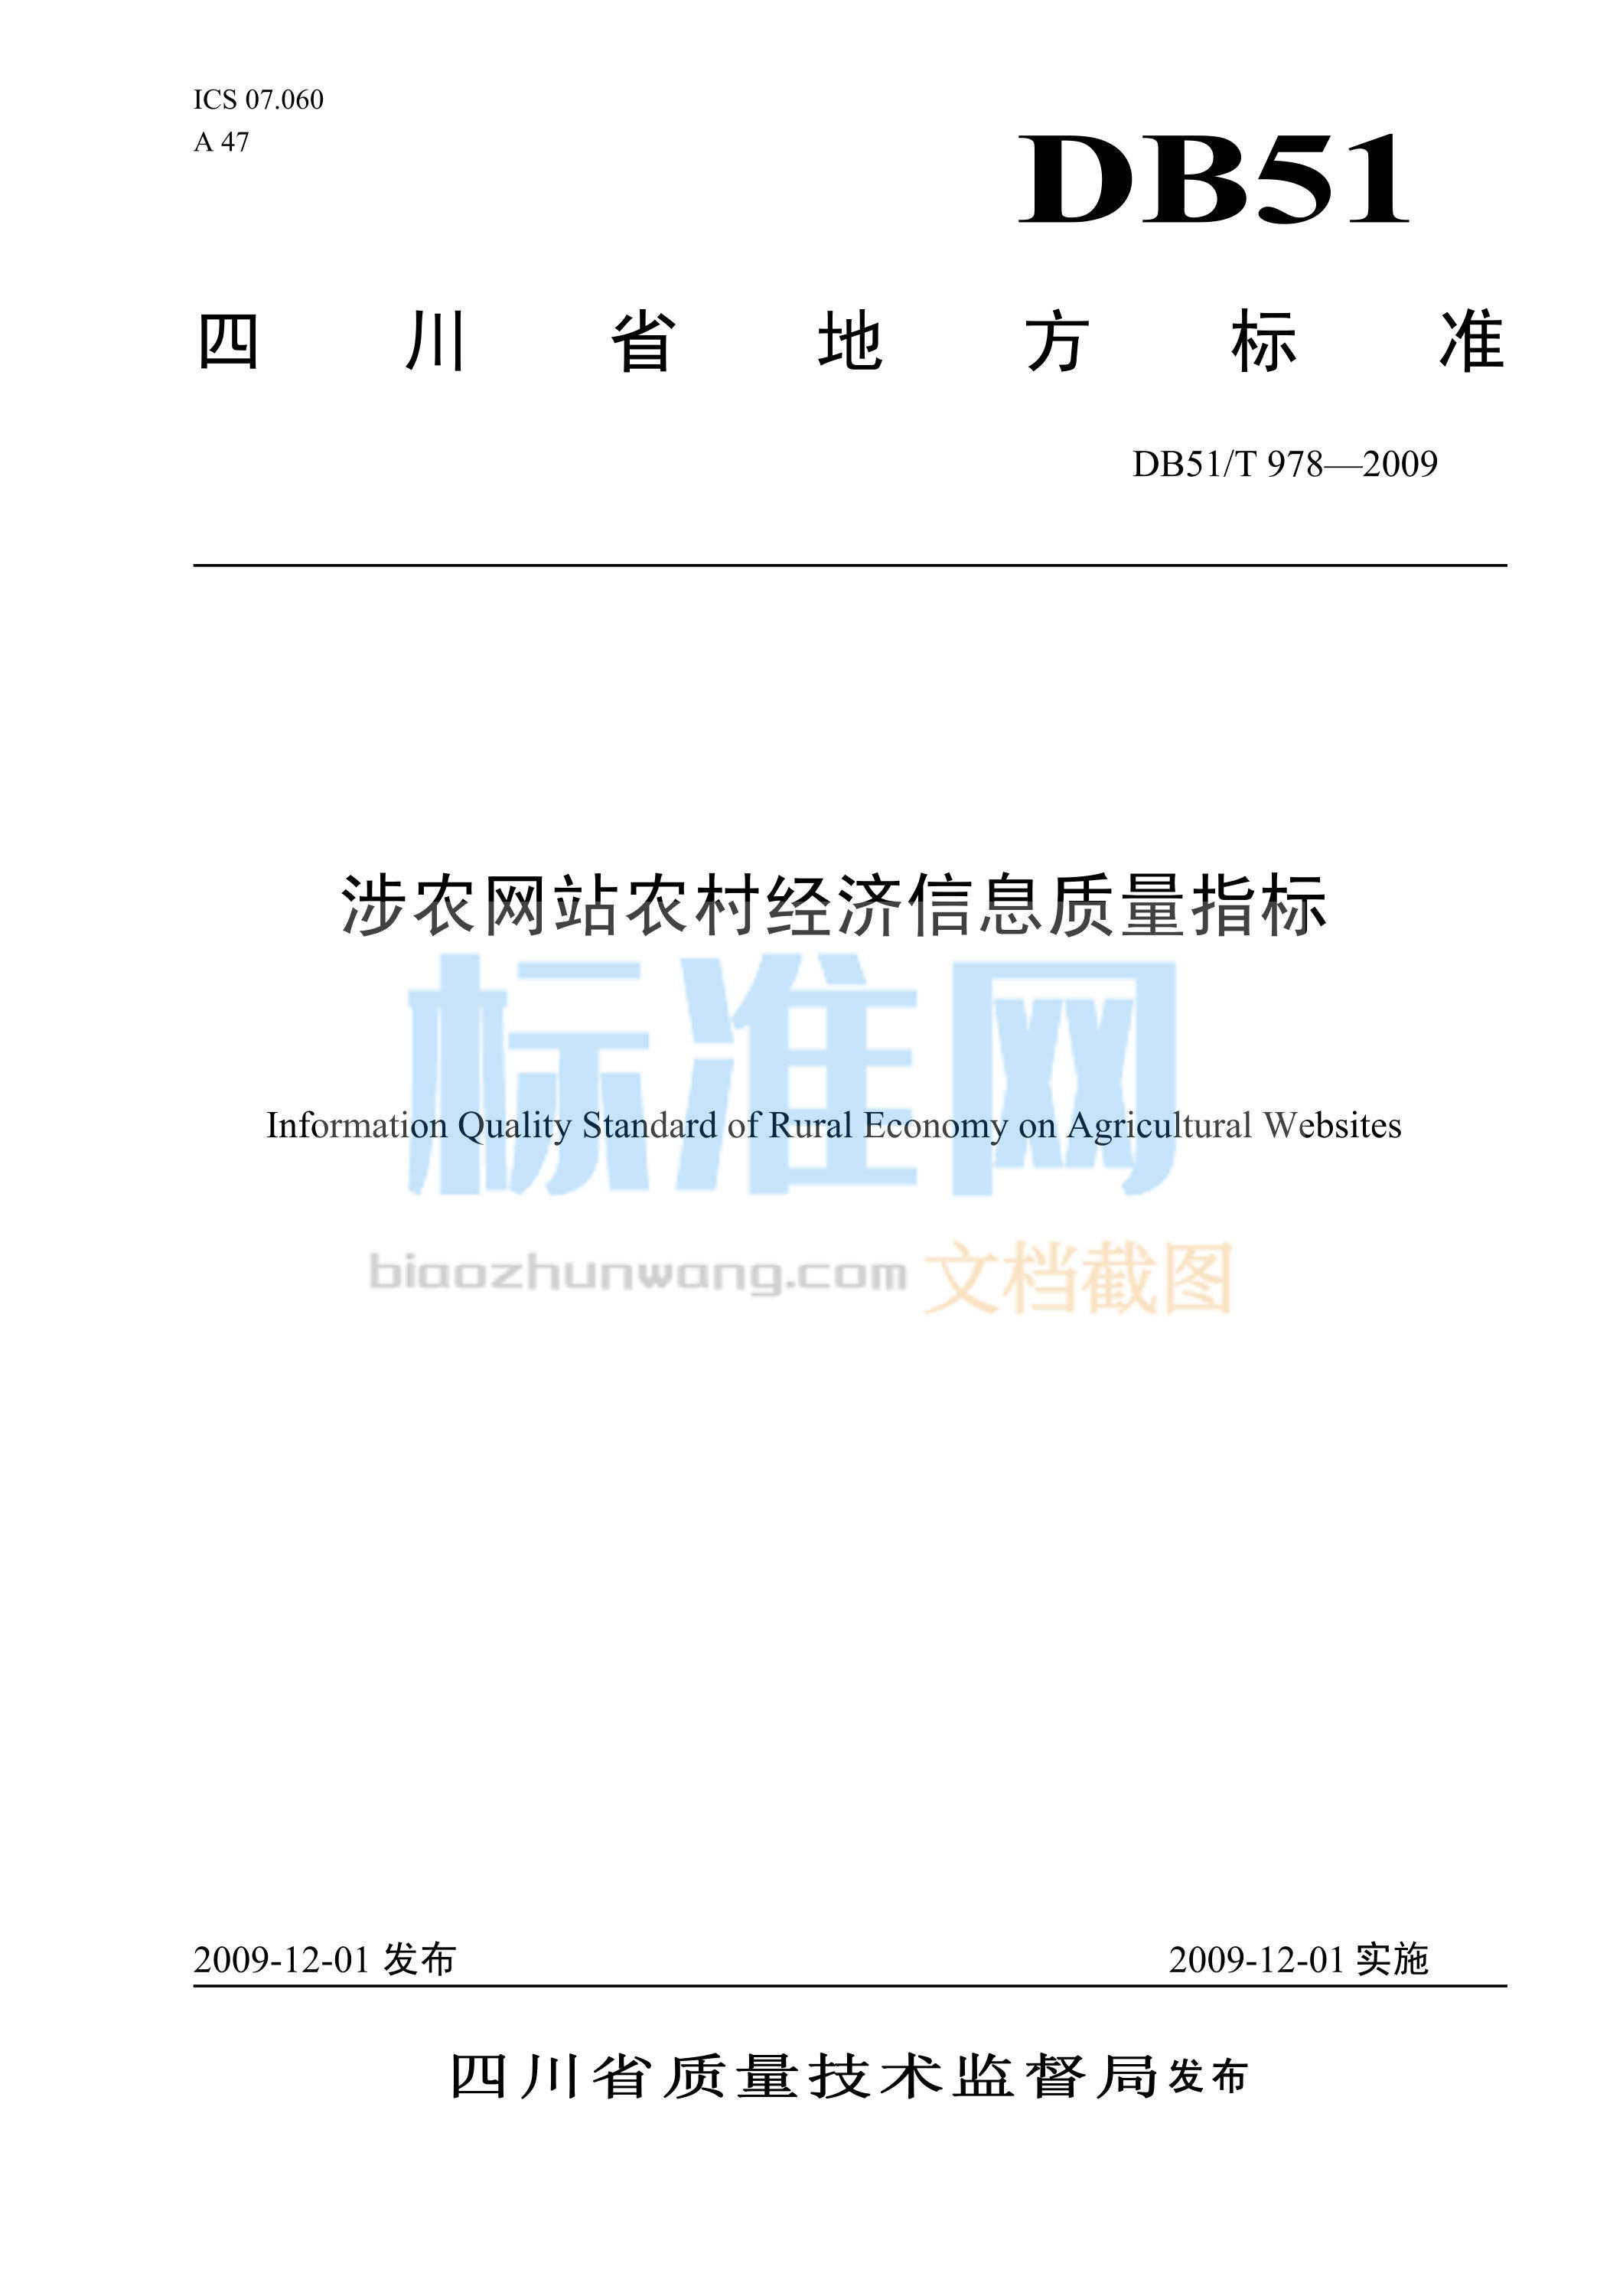 DB51∕T 978-2009 涉农网站农村经济信息质量指标